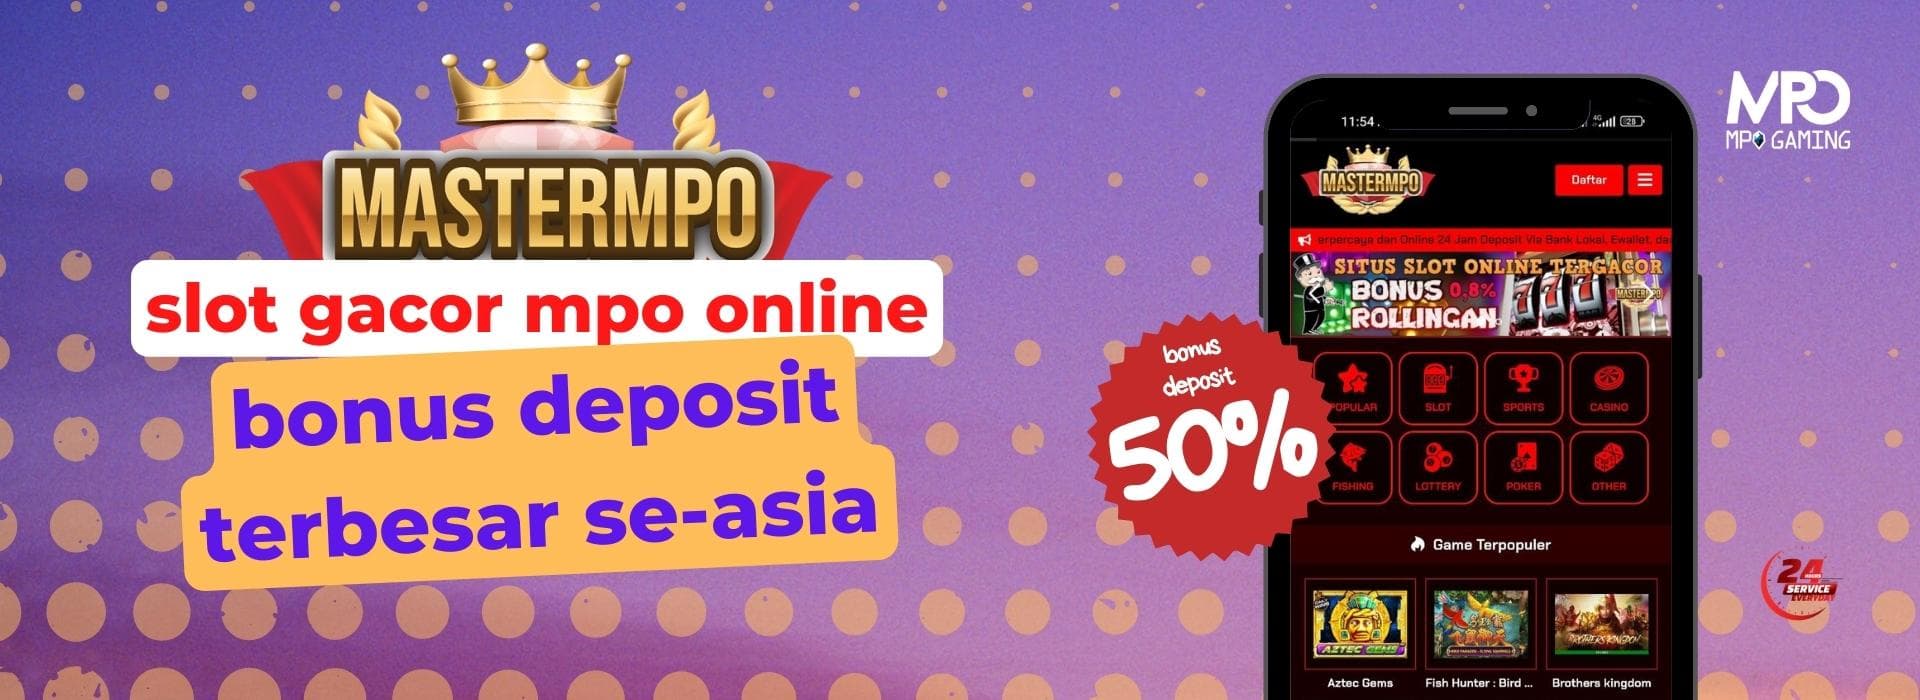 slot-gacor-mpo-online-bonus-deposit-terbesar.jpeg?9db2843df186ca4d19d02f4034d00146